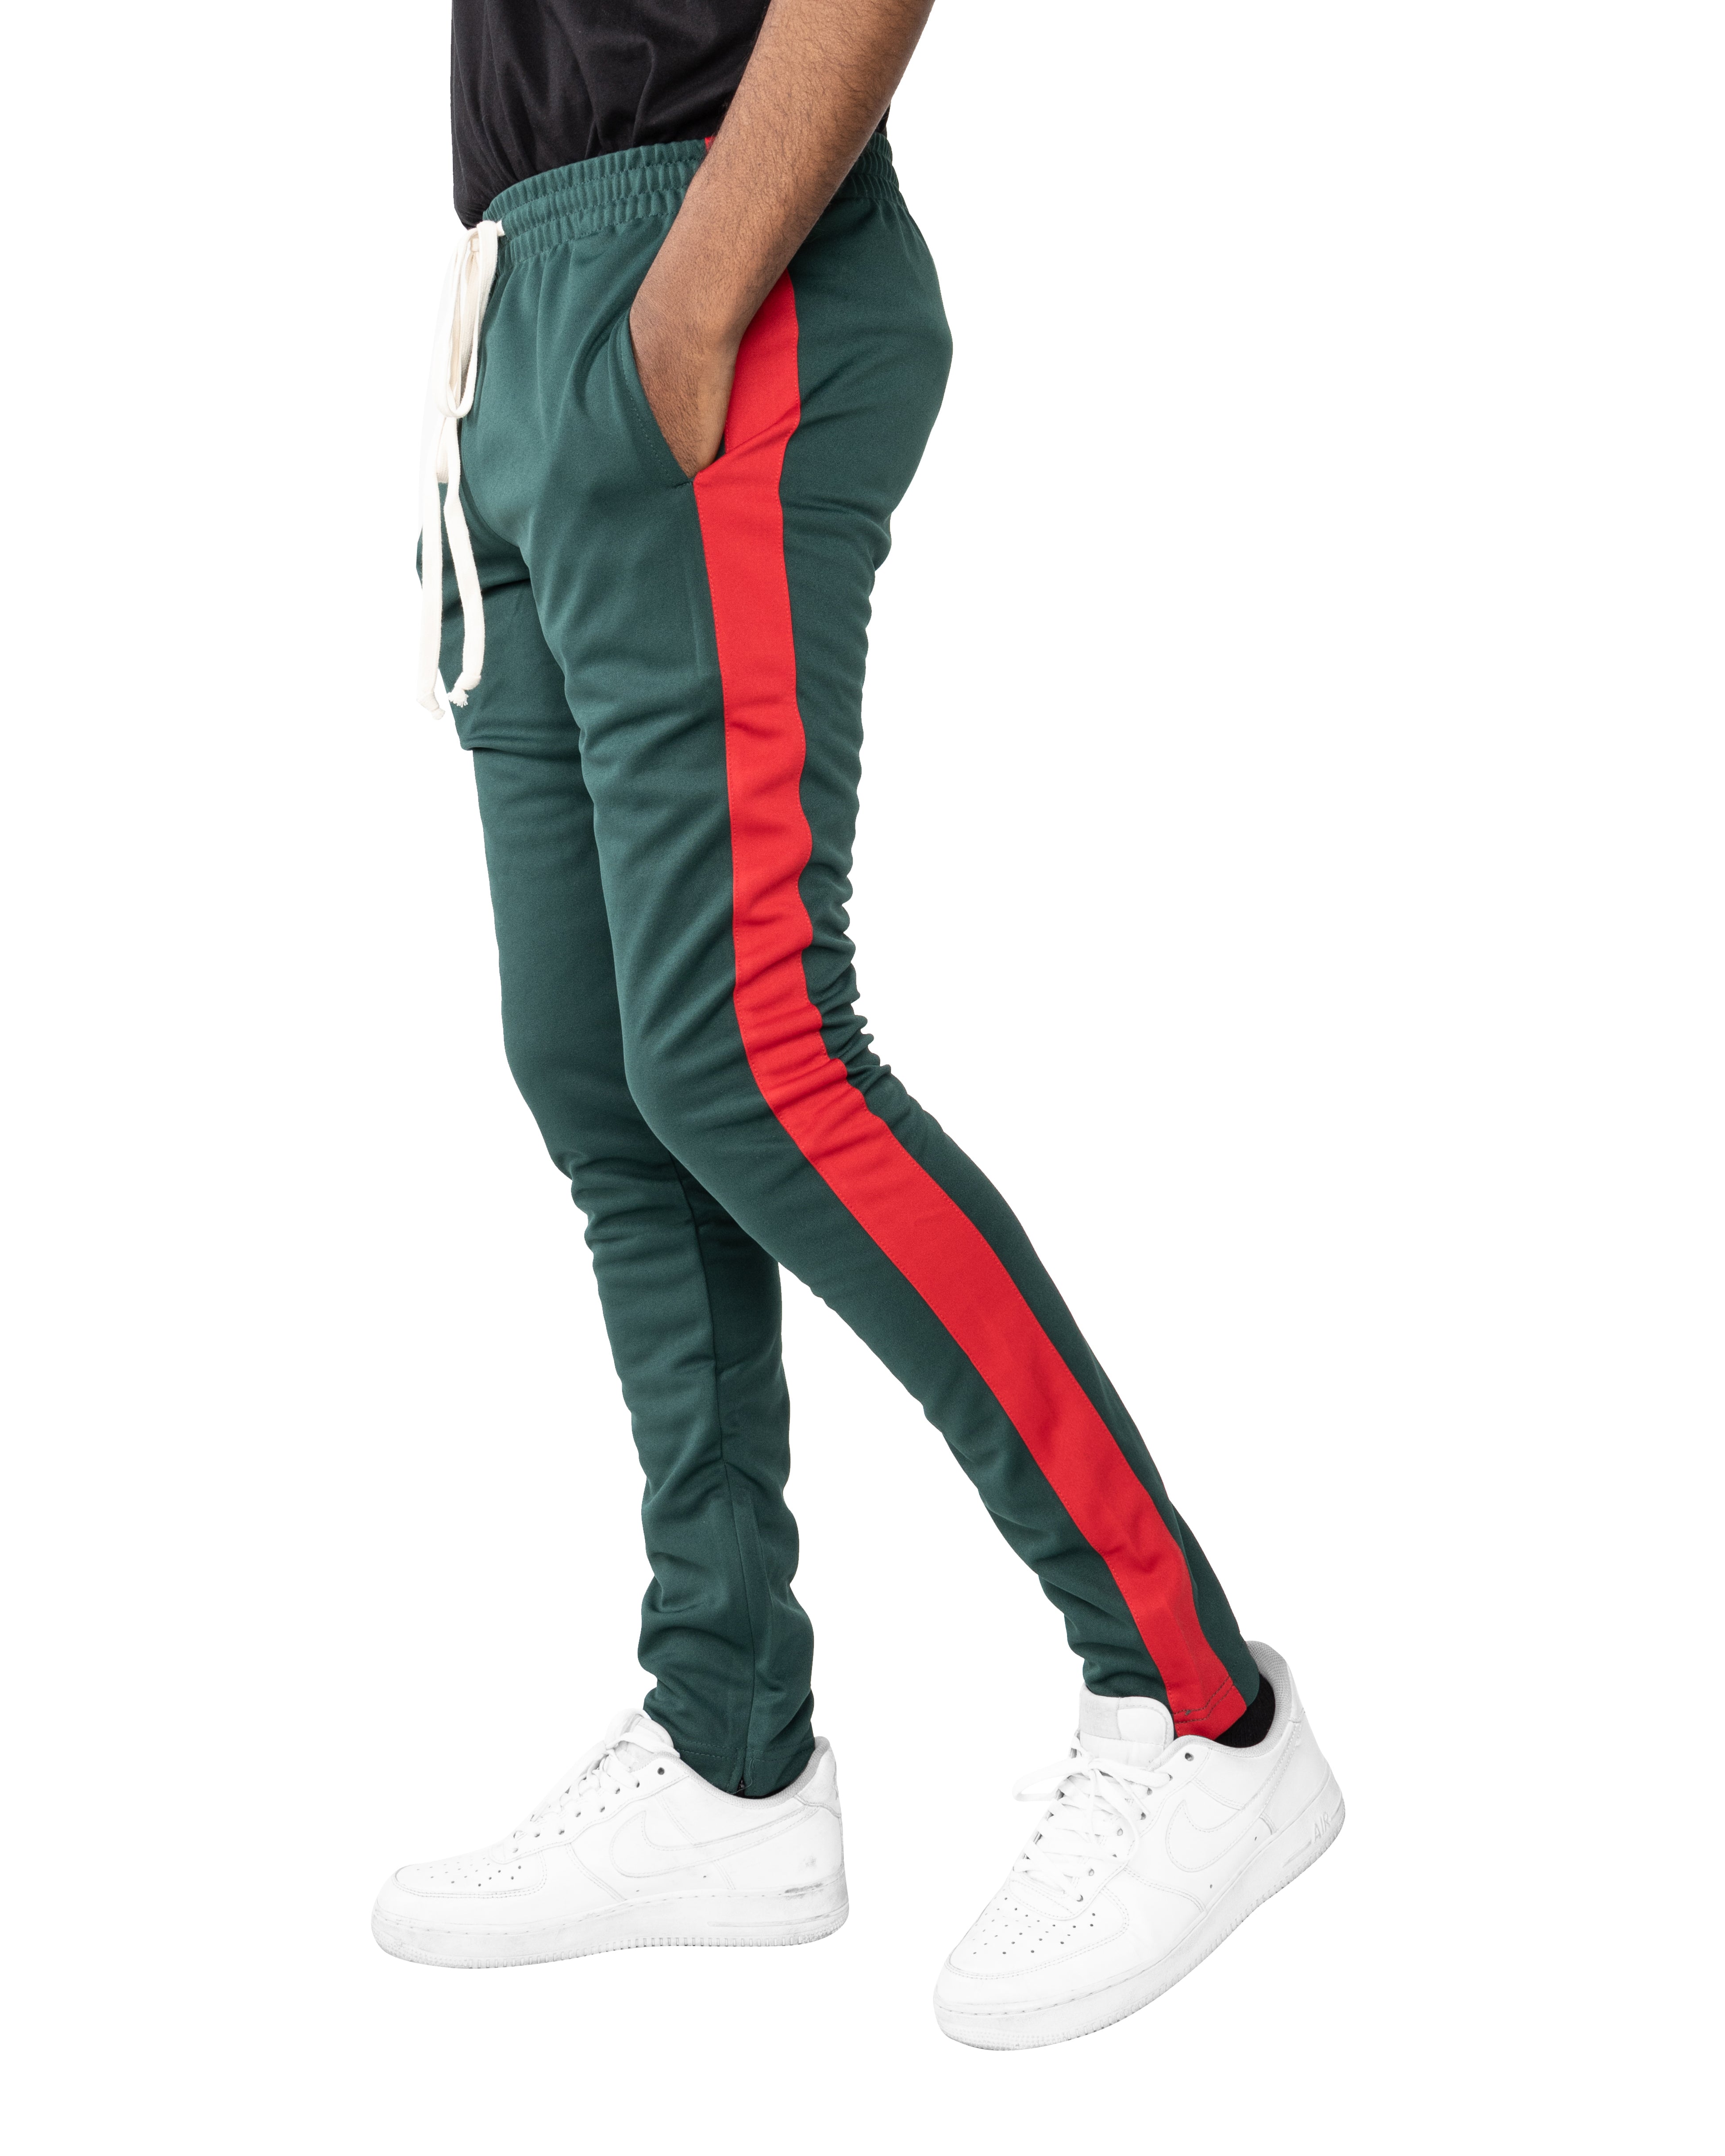 Adidas Originals Itasca 20 Jogger Pants | Connecticut Post Mall